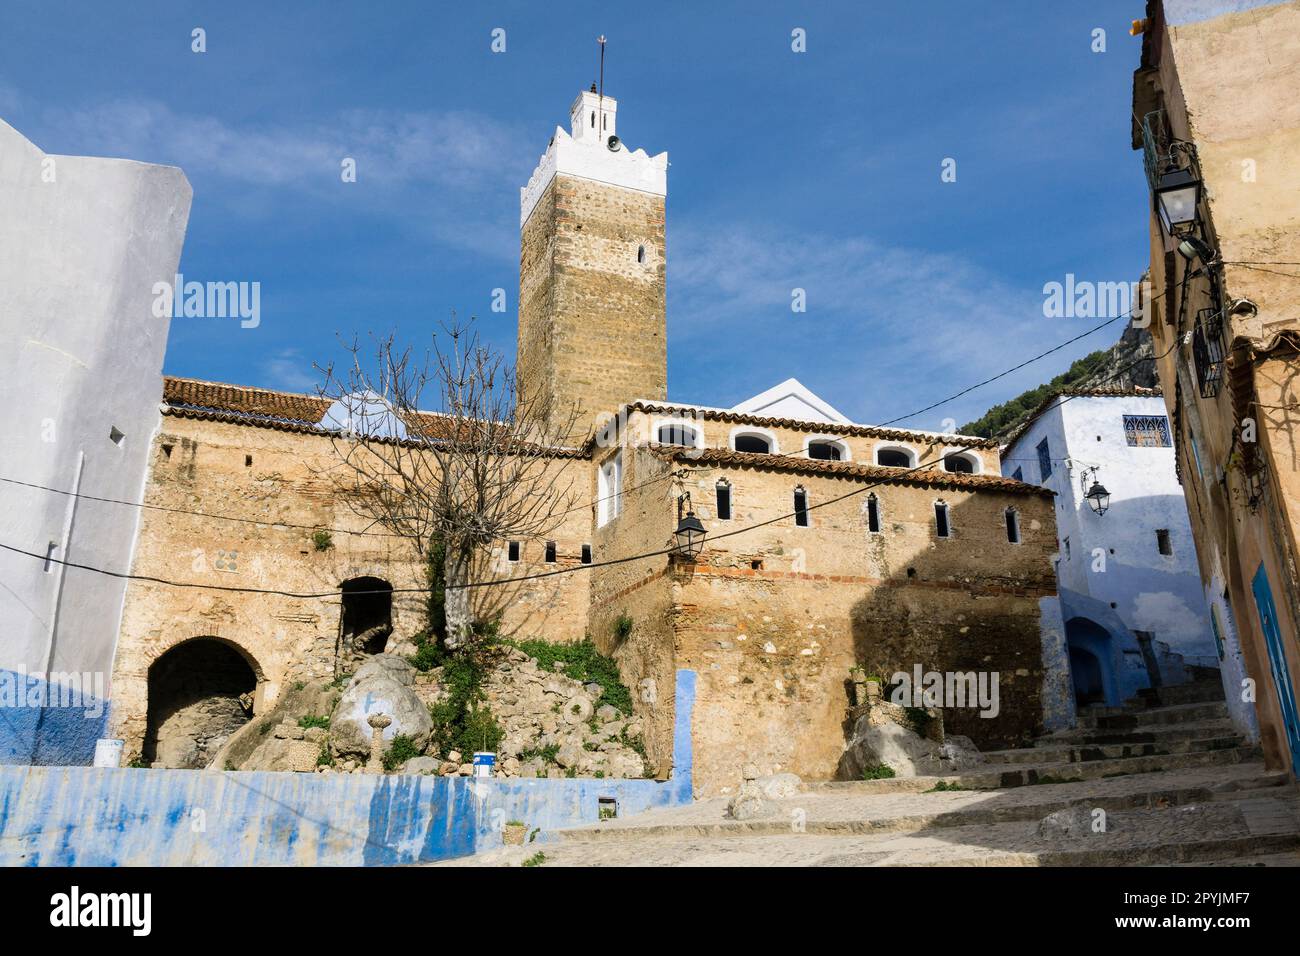 gran mezquita, construida en el Siglo XV, por Moulay Alí Ben Rachid, Chefchauen, -Chauen-, Marruecos, norte de Africa, continente africano Stock Photo